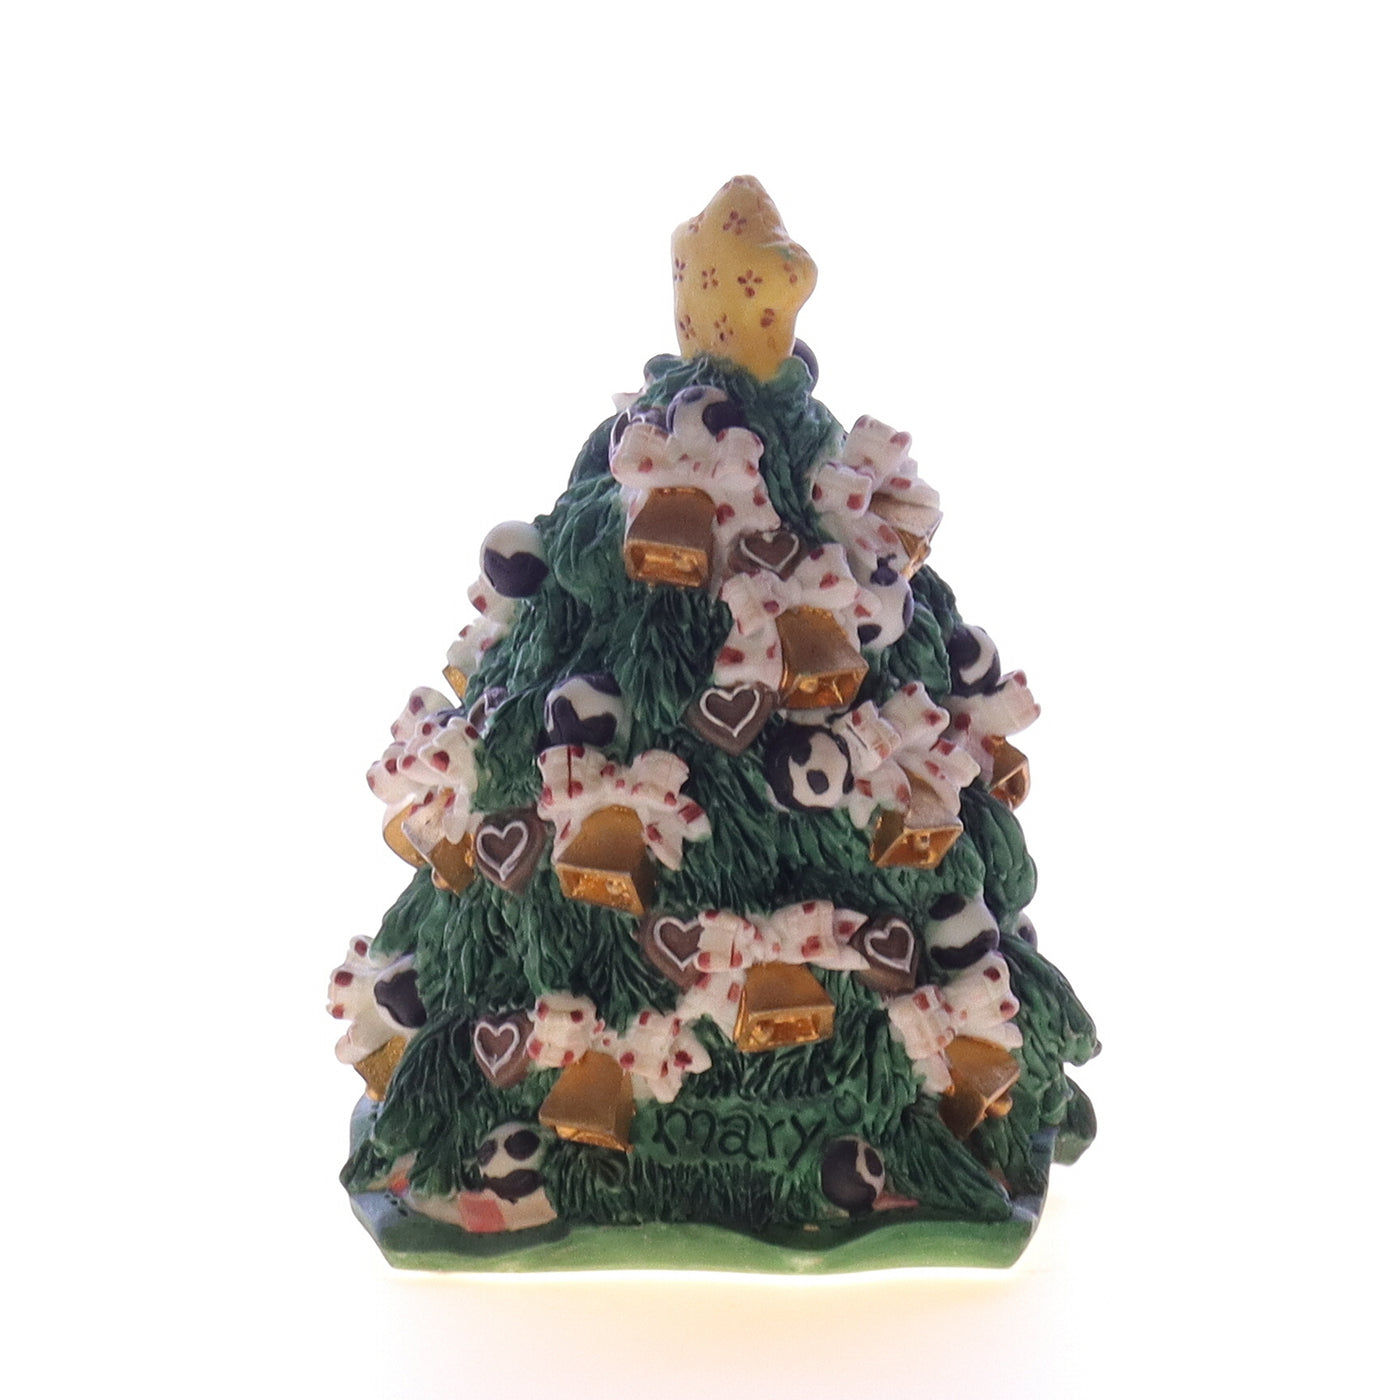 Marys_Moo_Moos_143022_Christmas_Tree_Christmas_Figurine_1995_Box Back Right View